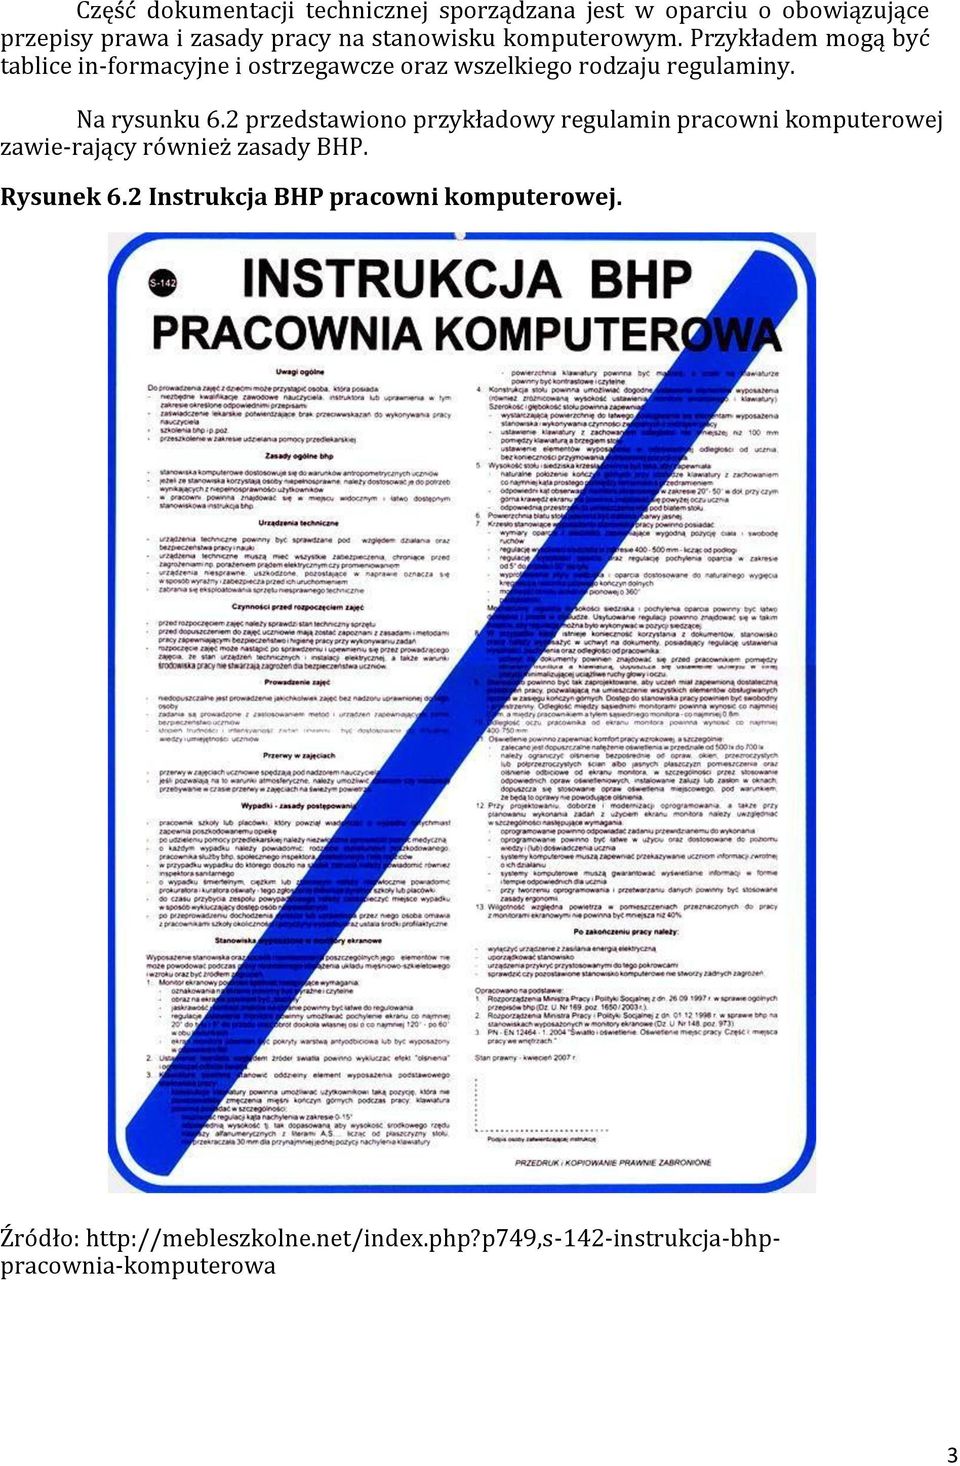 Na rysunku 6.2 przedstawiono przykładowy regulamin pracowni komputerowej zawie-rający również zasady BHP. Rysunek 6.